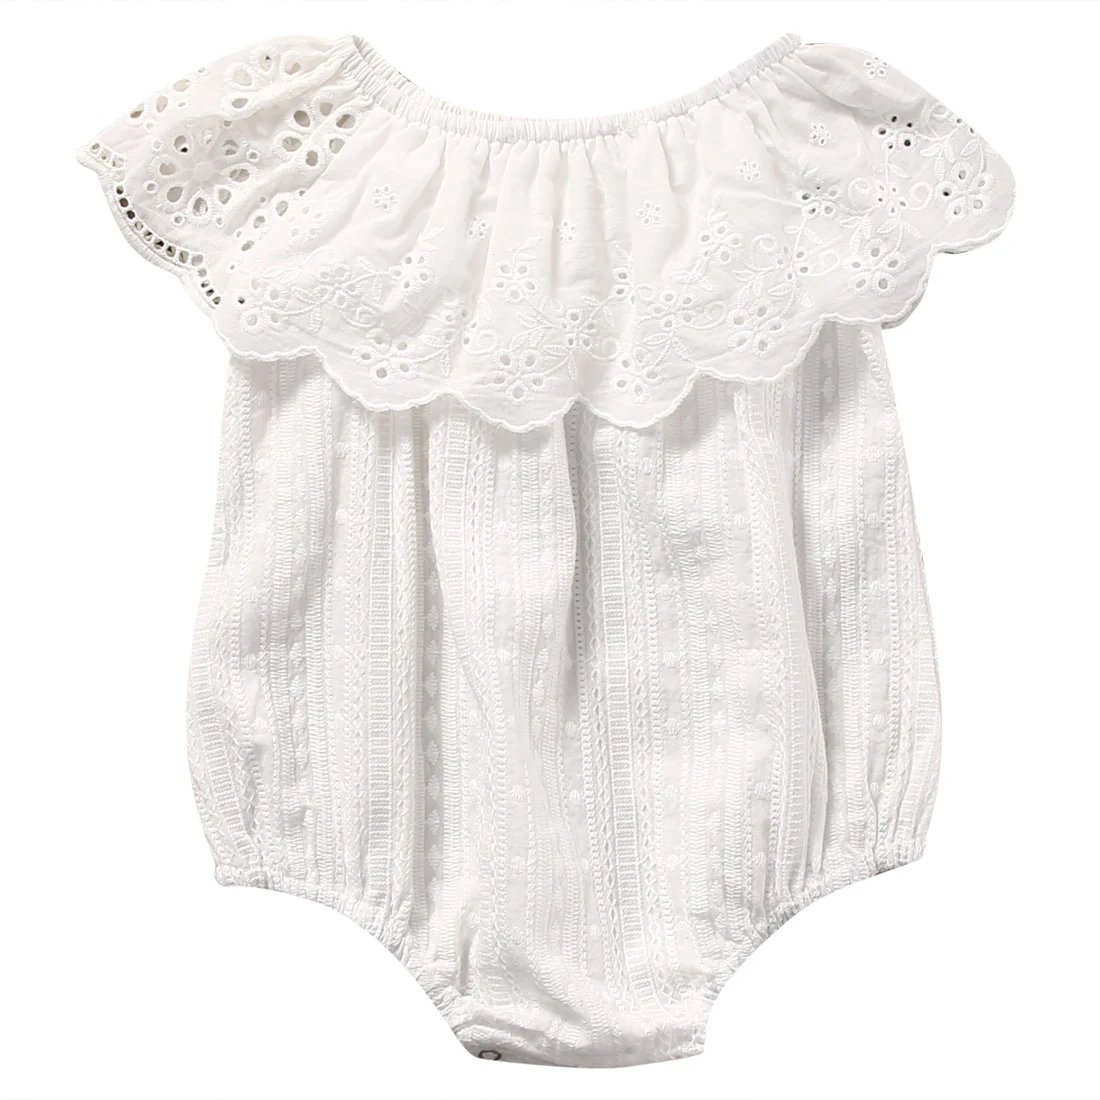 Лето, белый кружевной комбинезон для новорожденных девочек, комбинезоны детская одежда, костюм